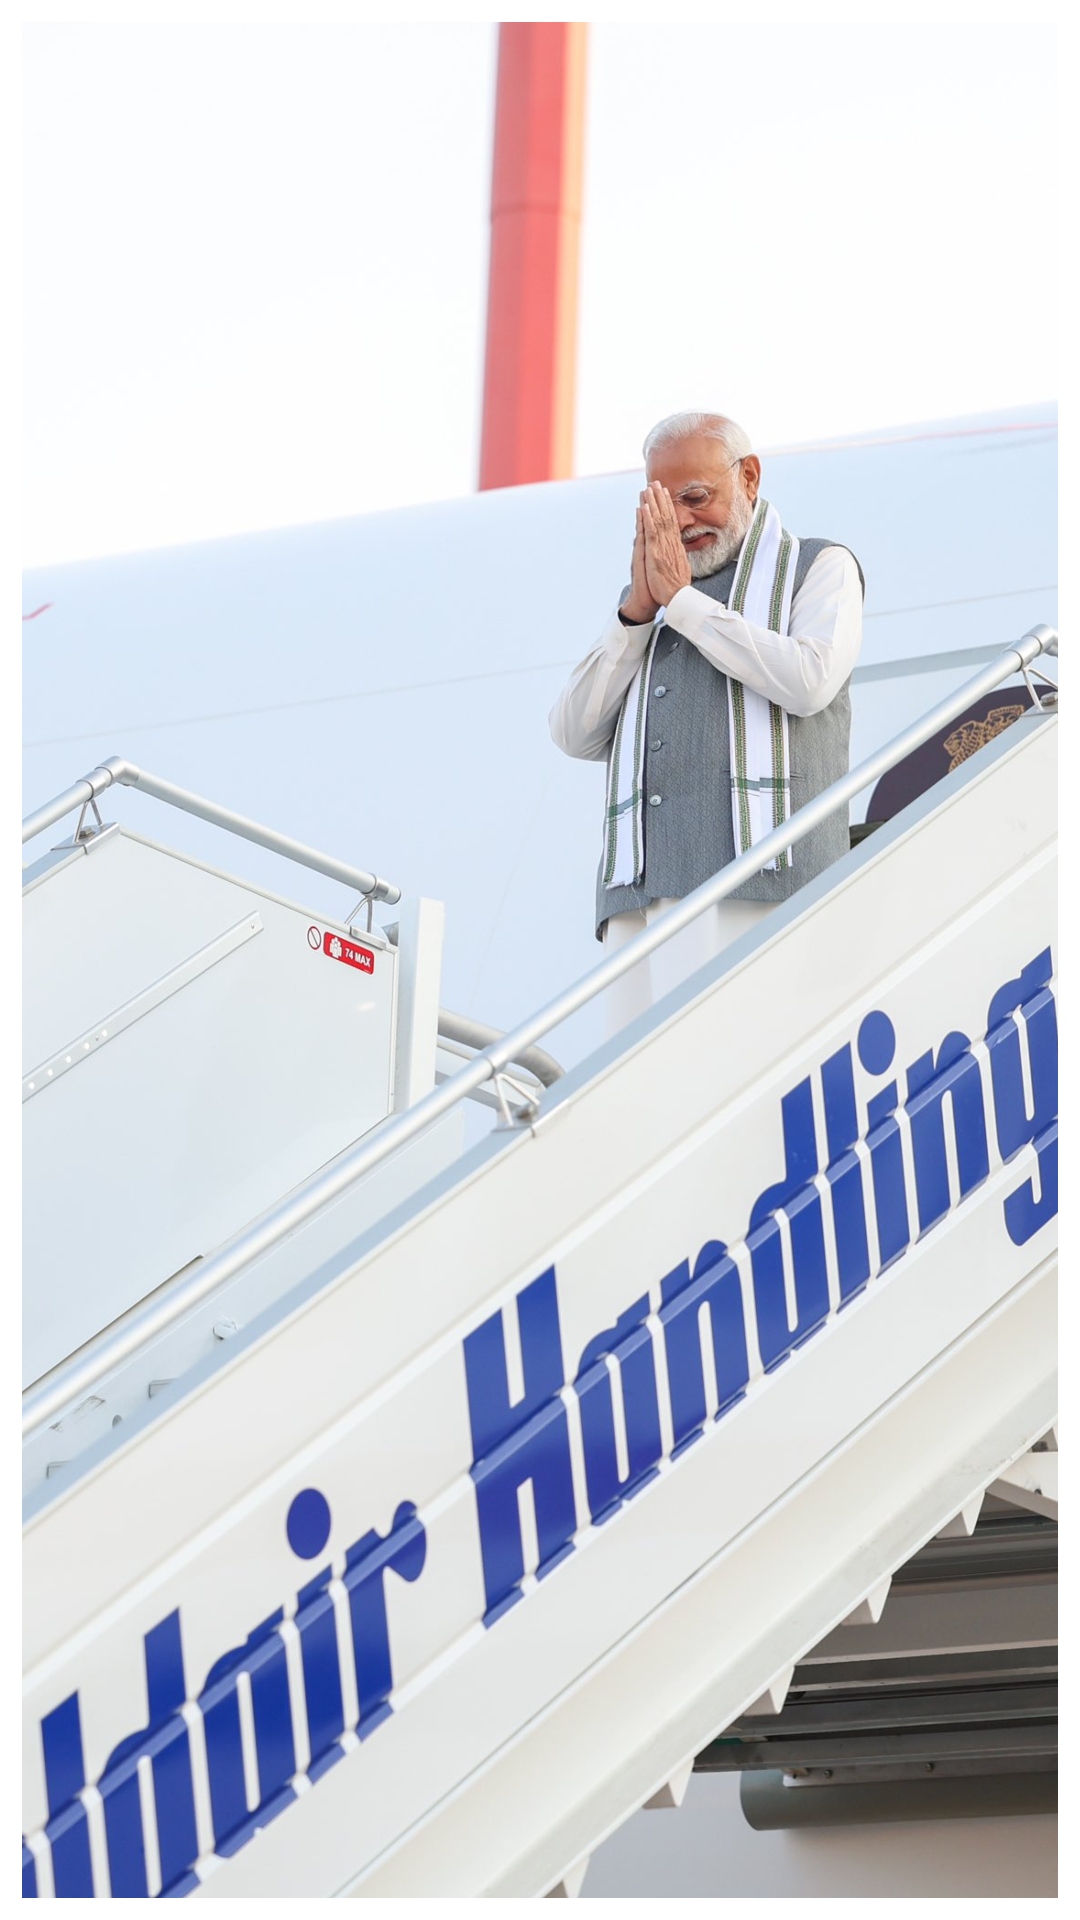 PM Modi's maiden visit to Greece | In pics